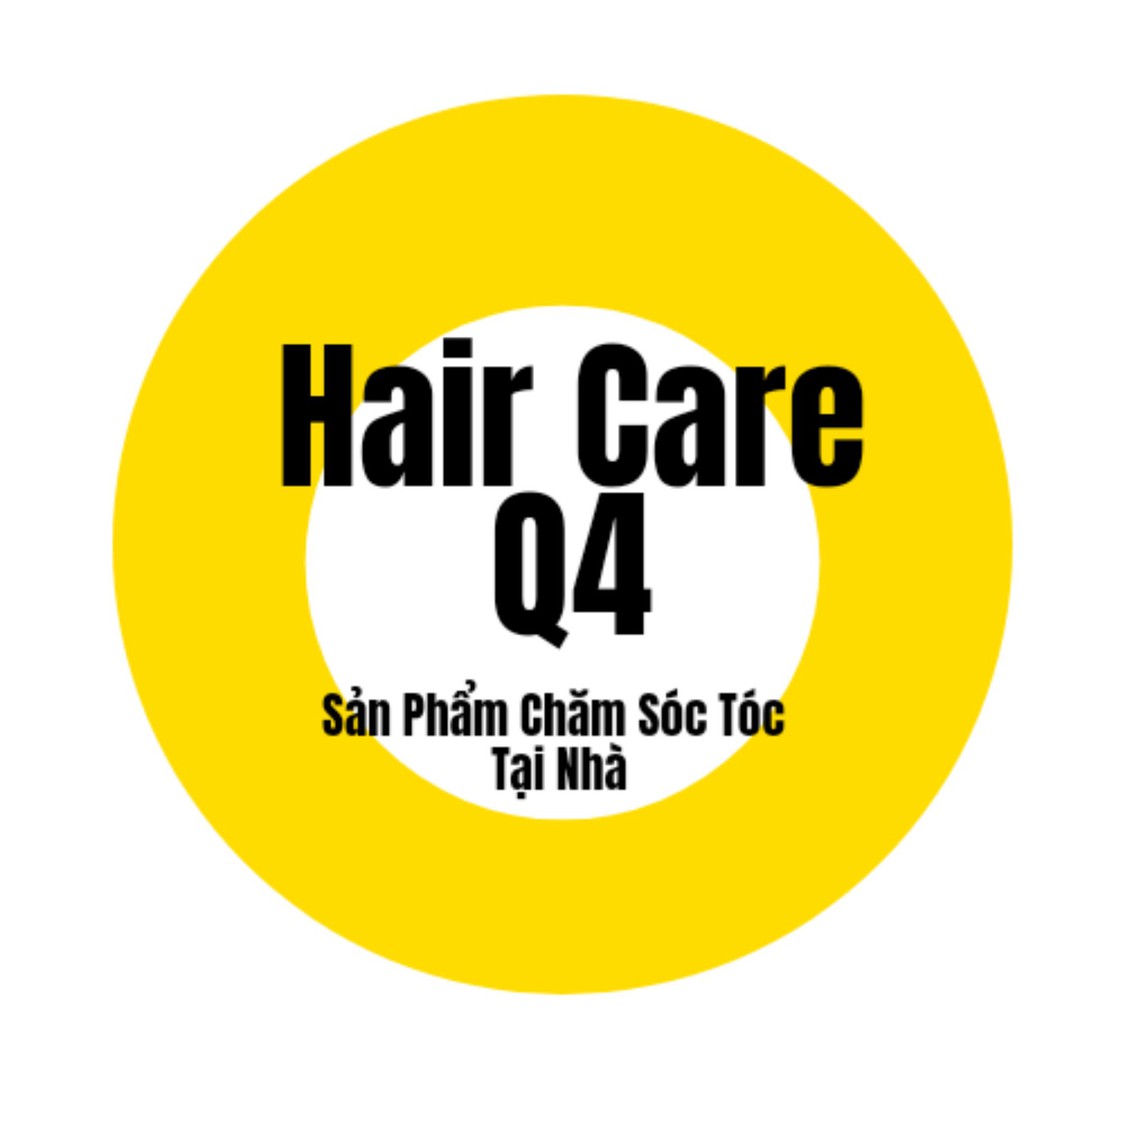 Hair Care Q4